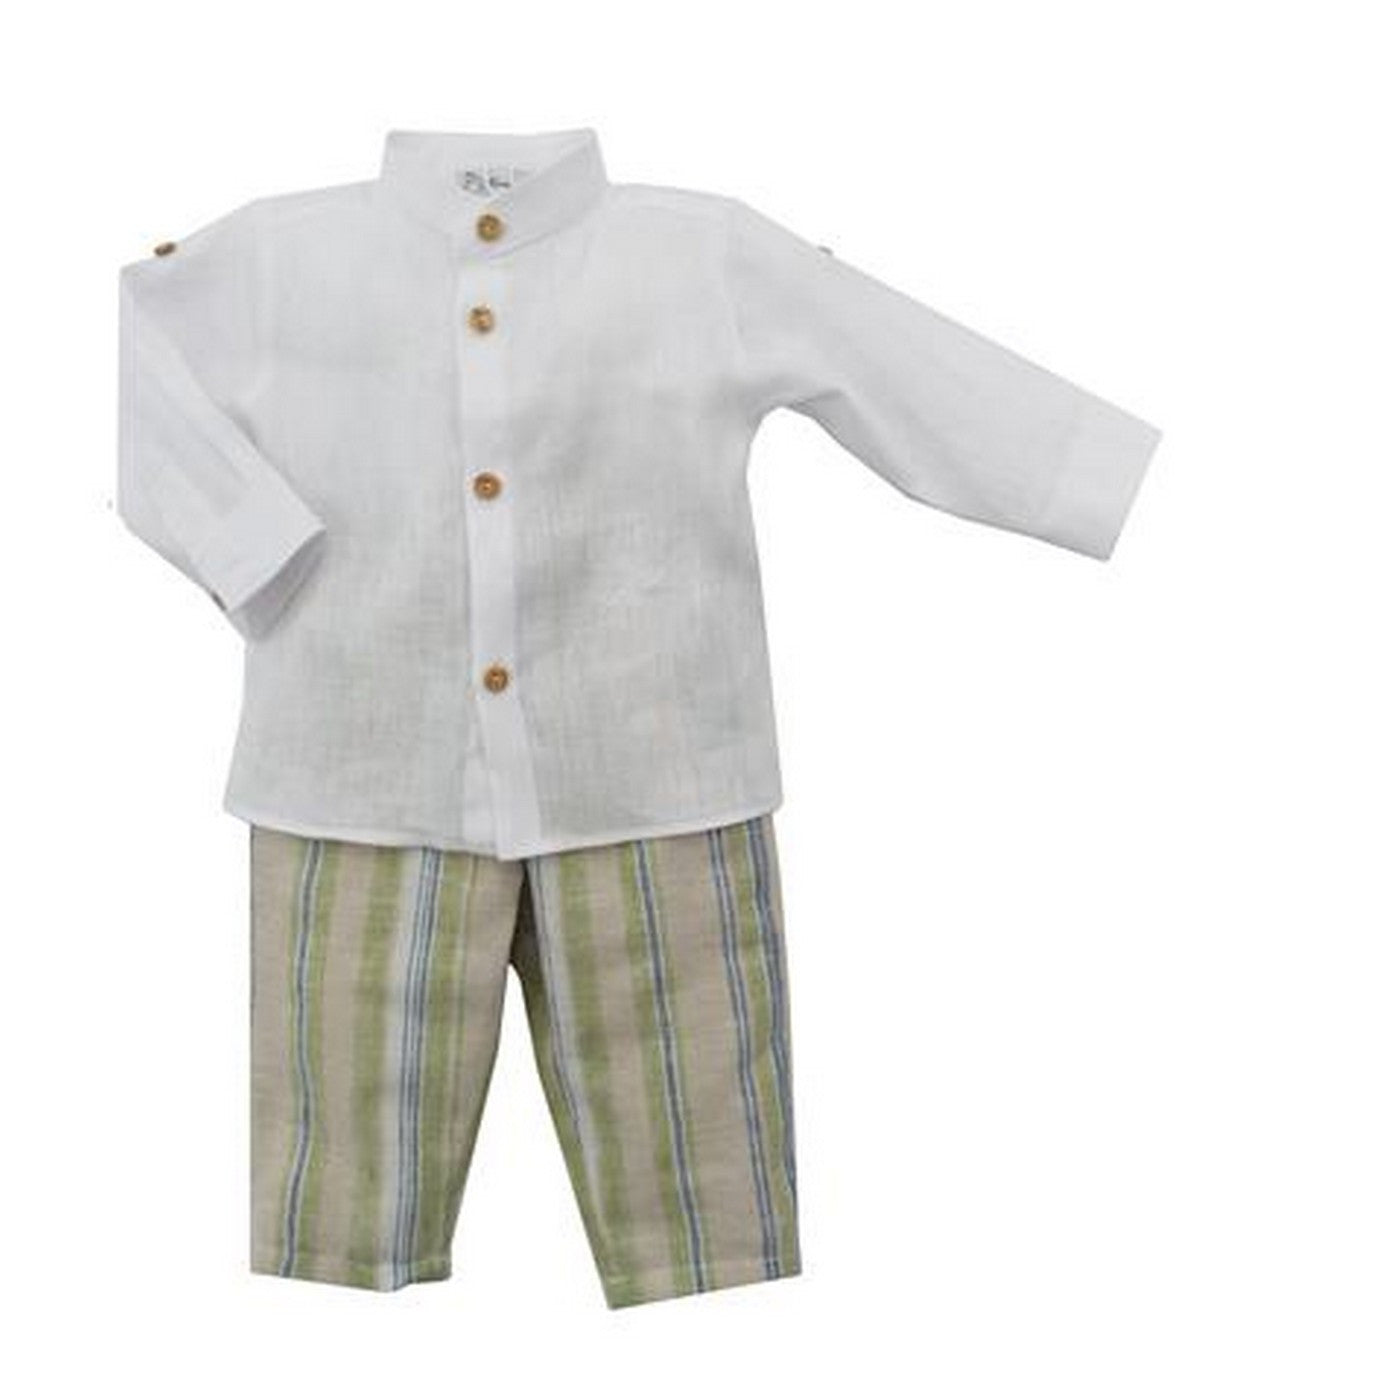 Completo Camicia E Pantalone Lungo In Cotone Fantasia Righe Neonato NINNAOH E22225 - NINNAOH - LuxuryKids